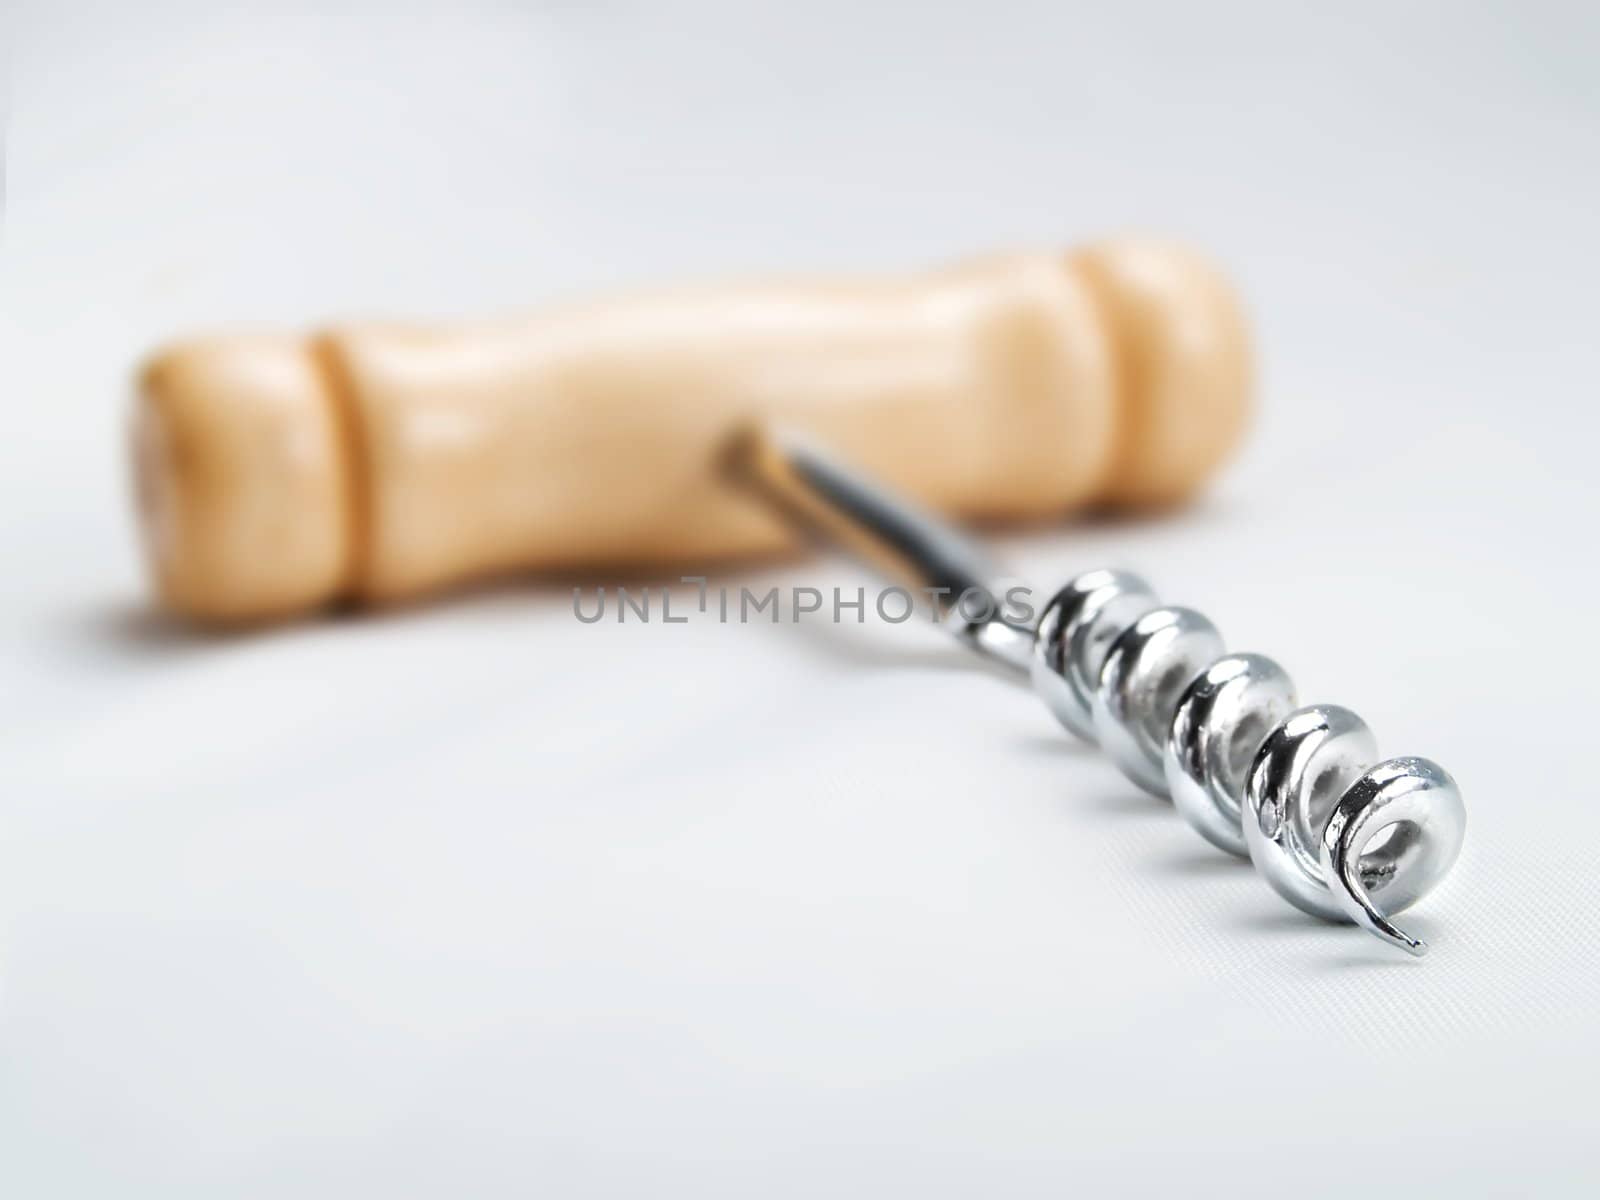 Wine corkscrew by henrischmit